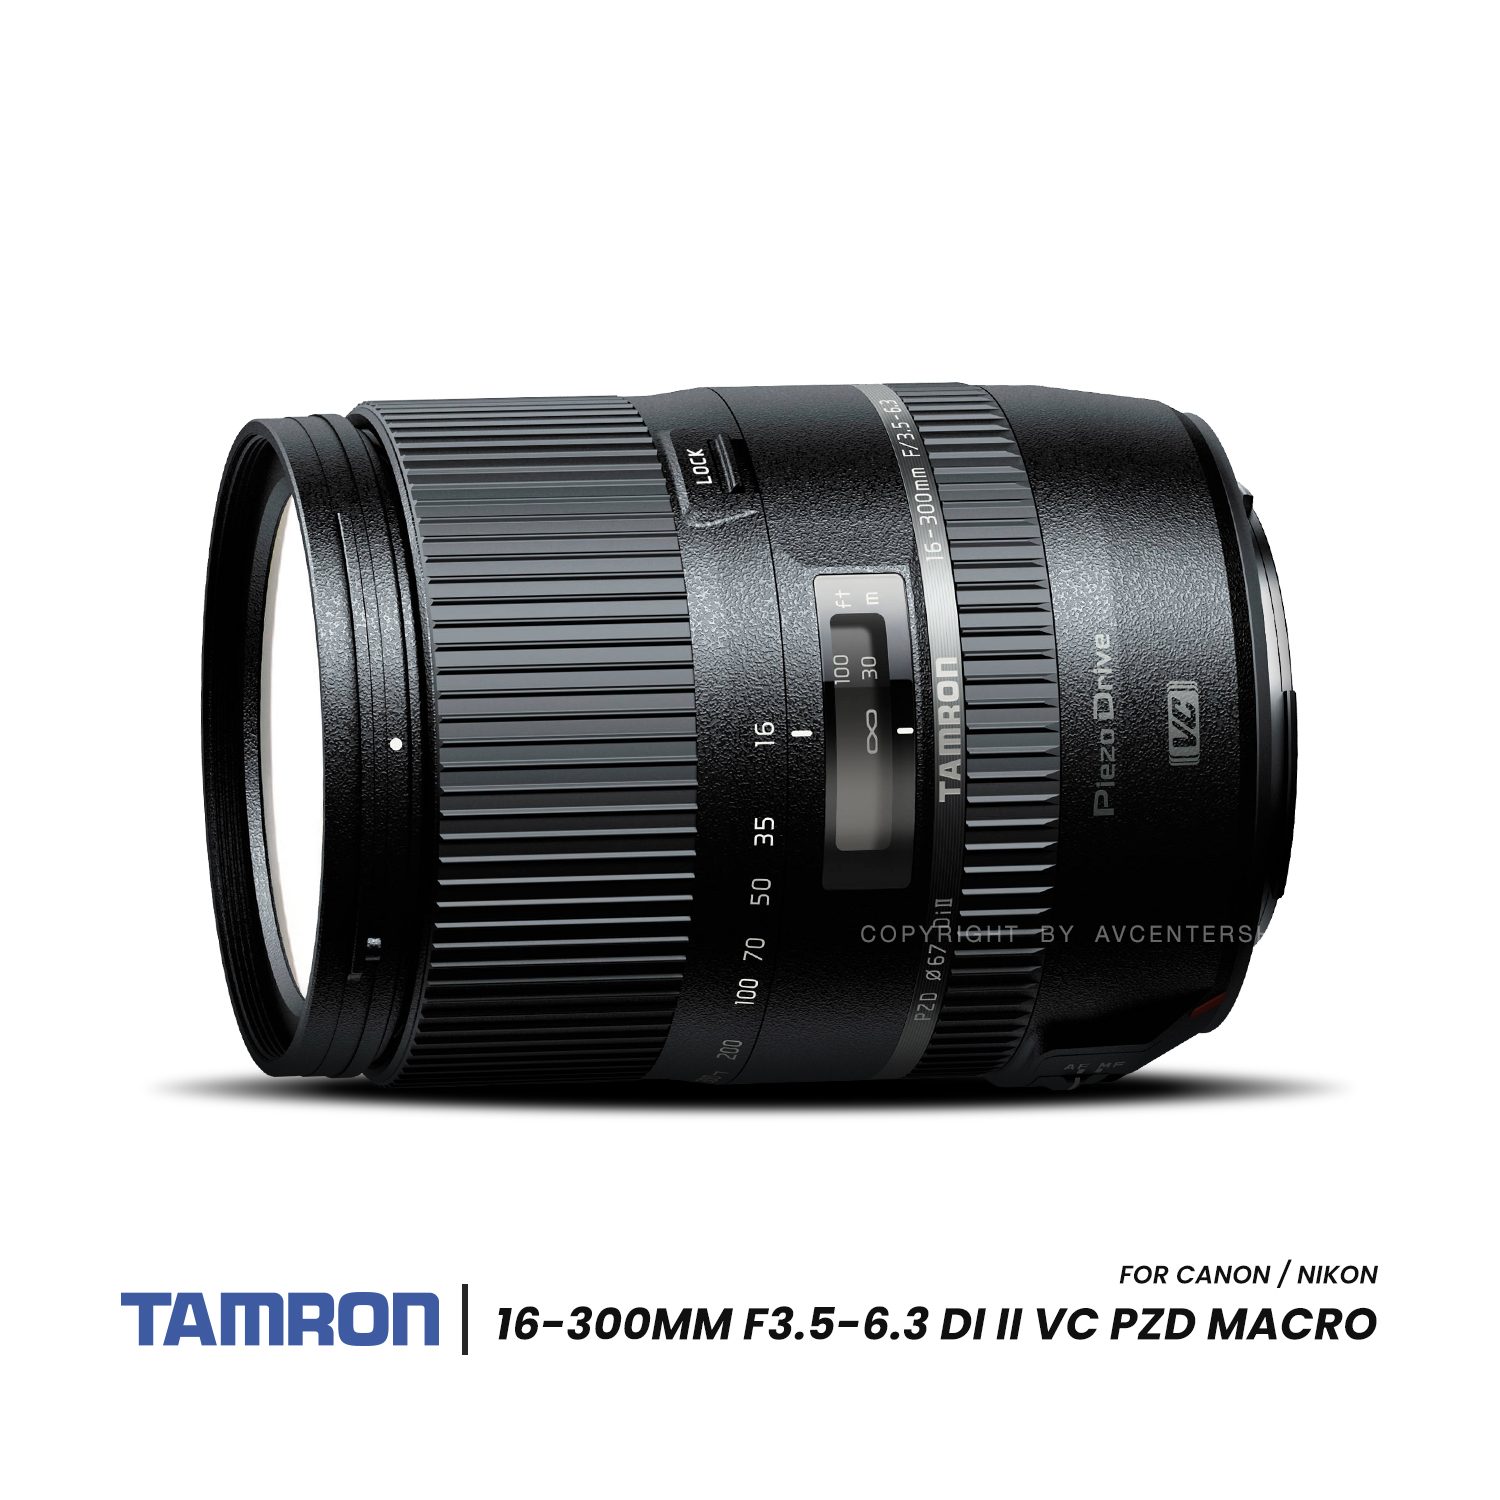 Tamron Lens 16-300 mm. F3.5-6.3 Di II VC PZD